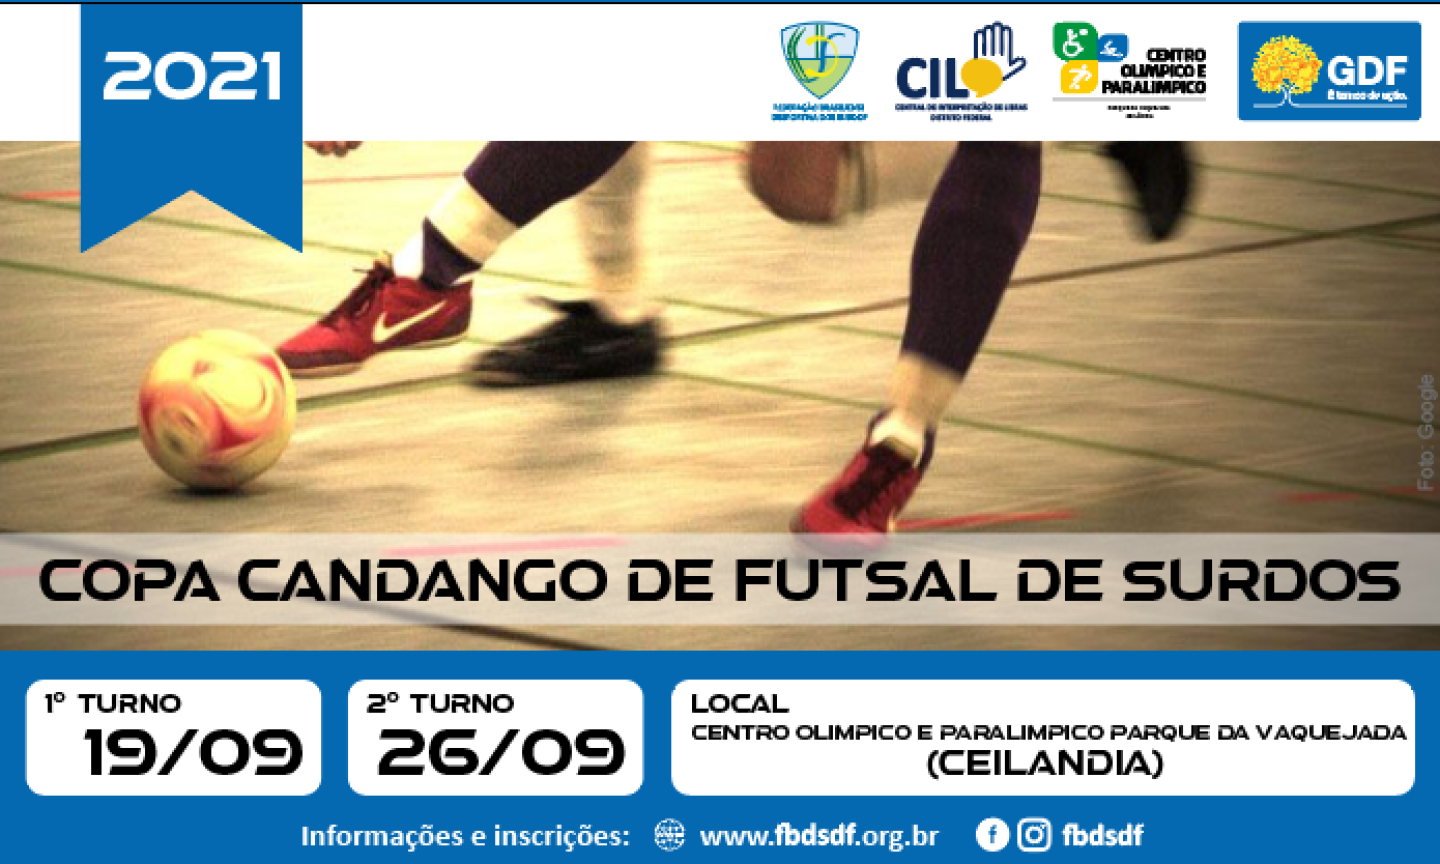 Prêmio de R$ 40 mil e um turno só: Paranaense de Futsal 2020 tem